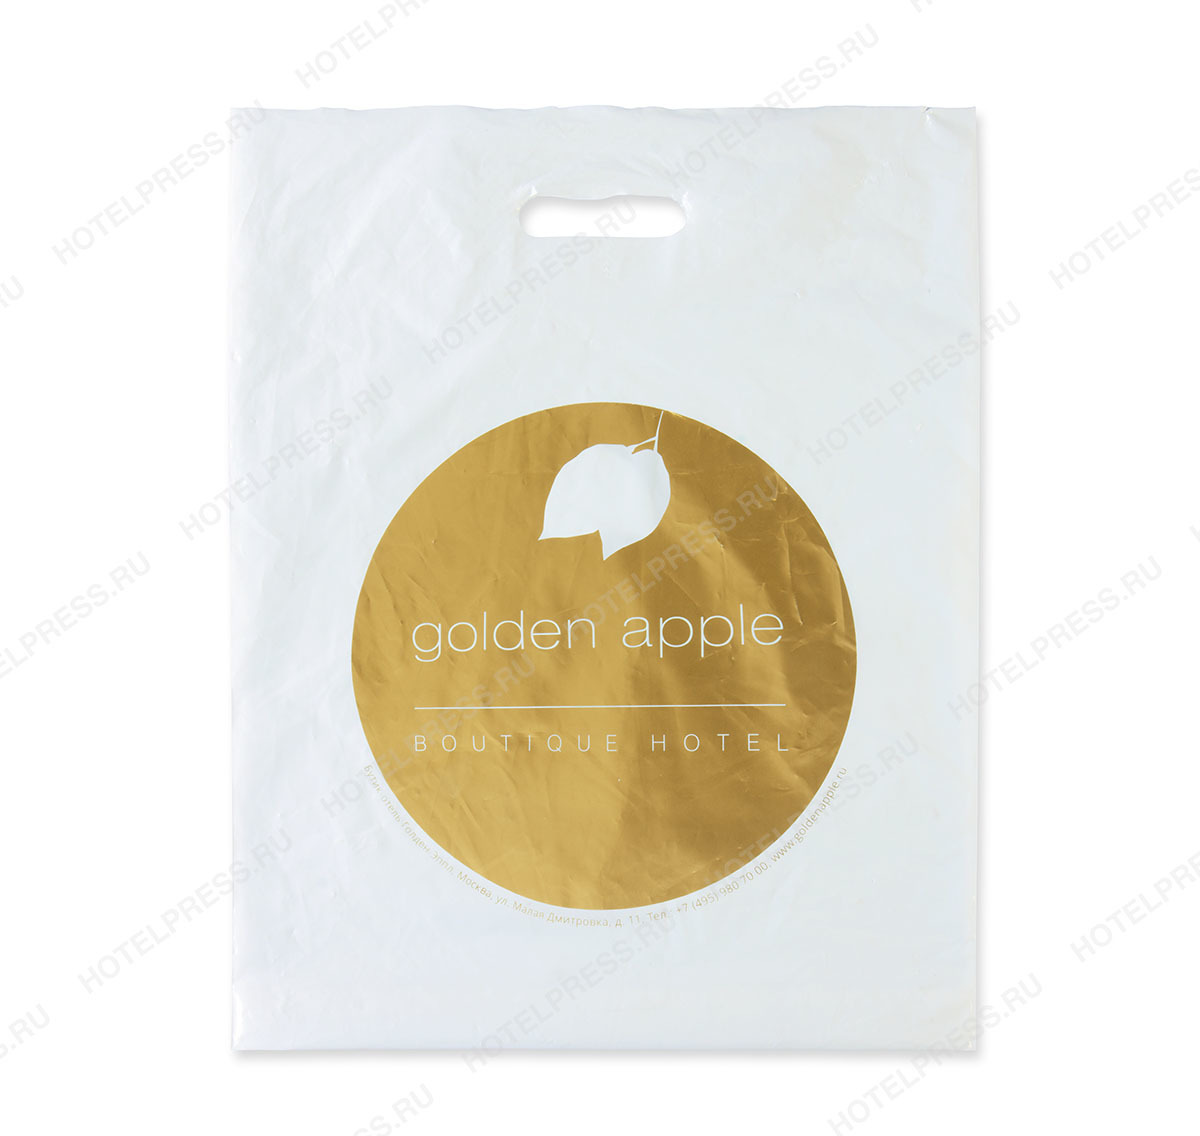 Пластиковый пакет бутик отеля Golden apple